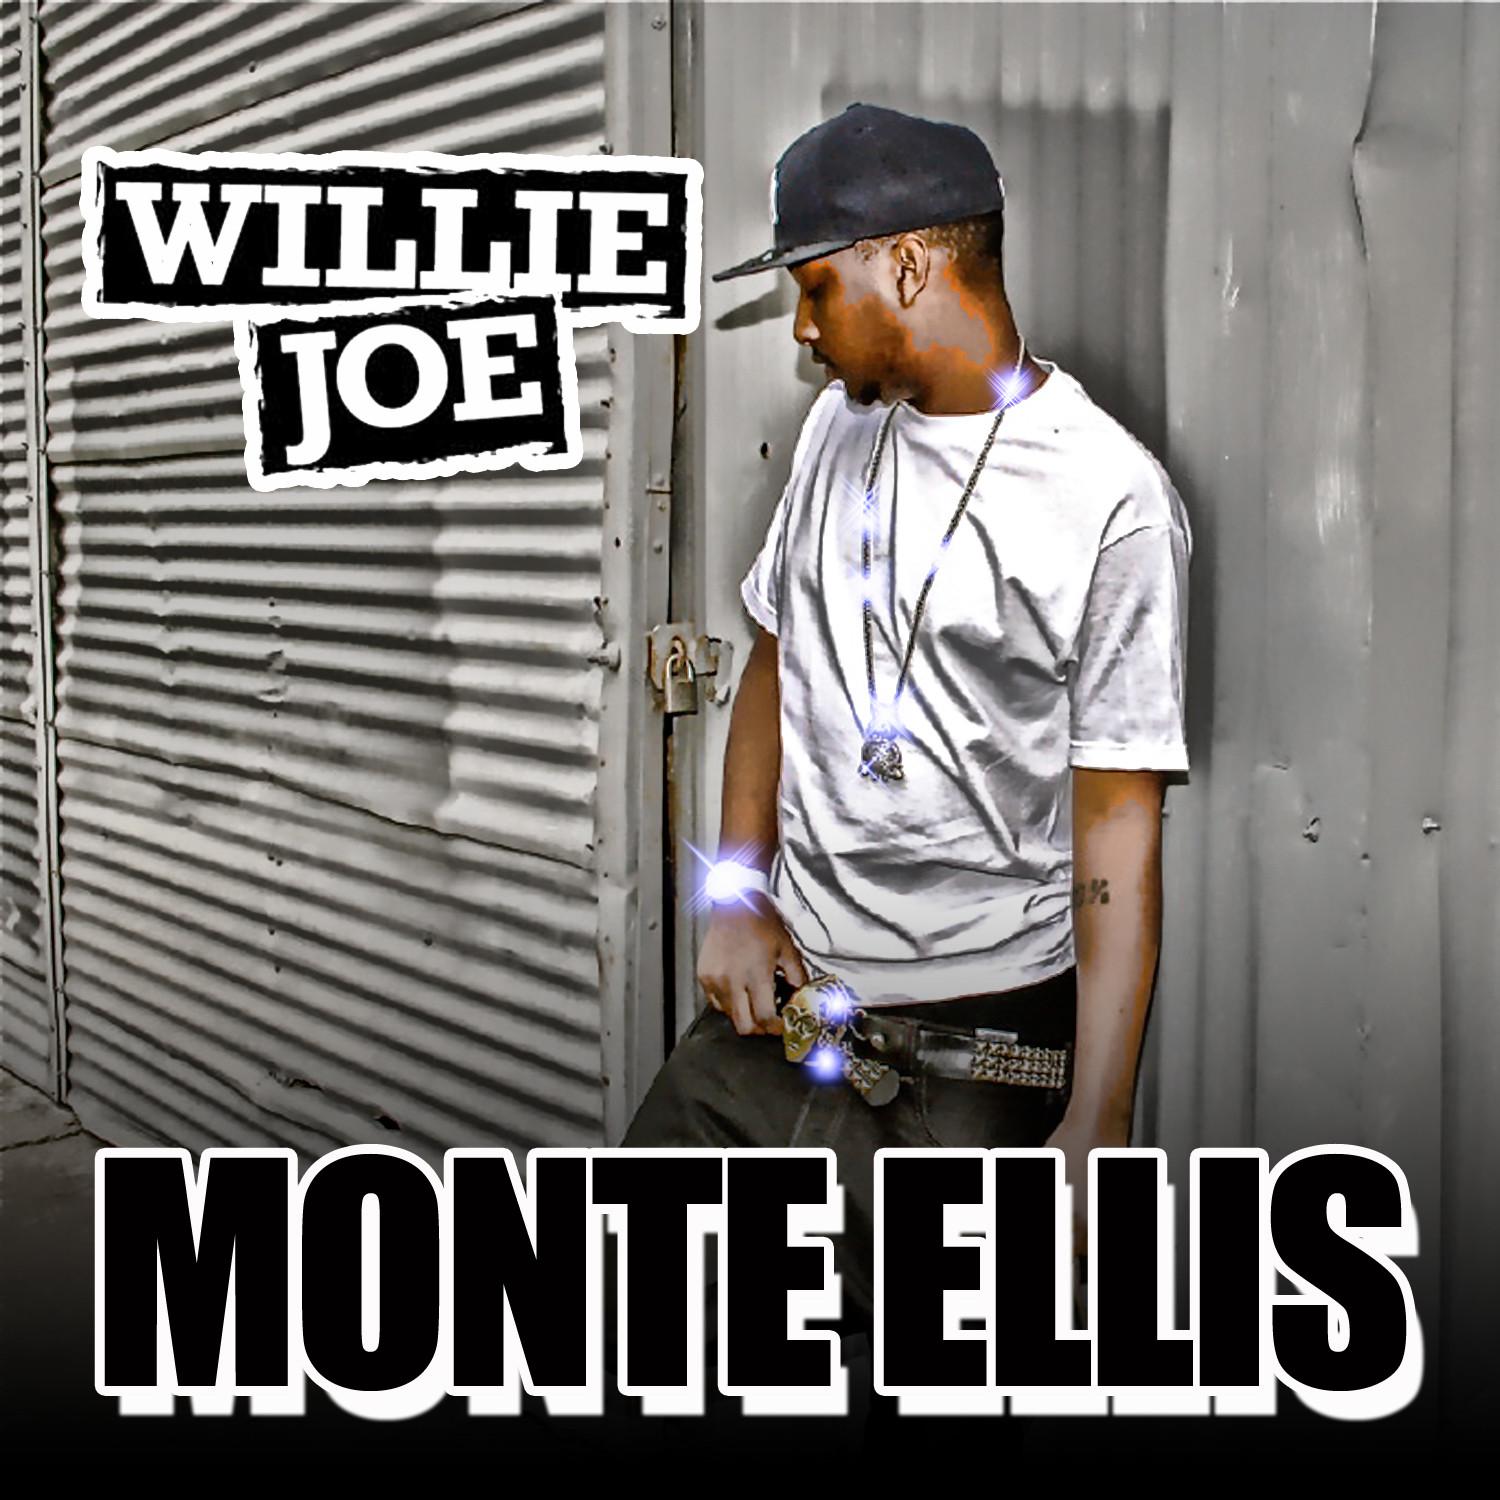 Monte Ellis - Single